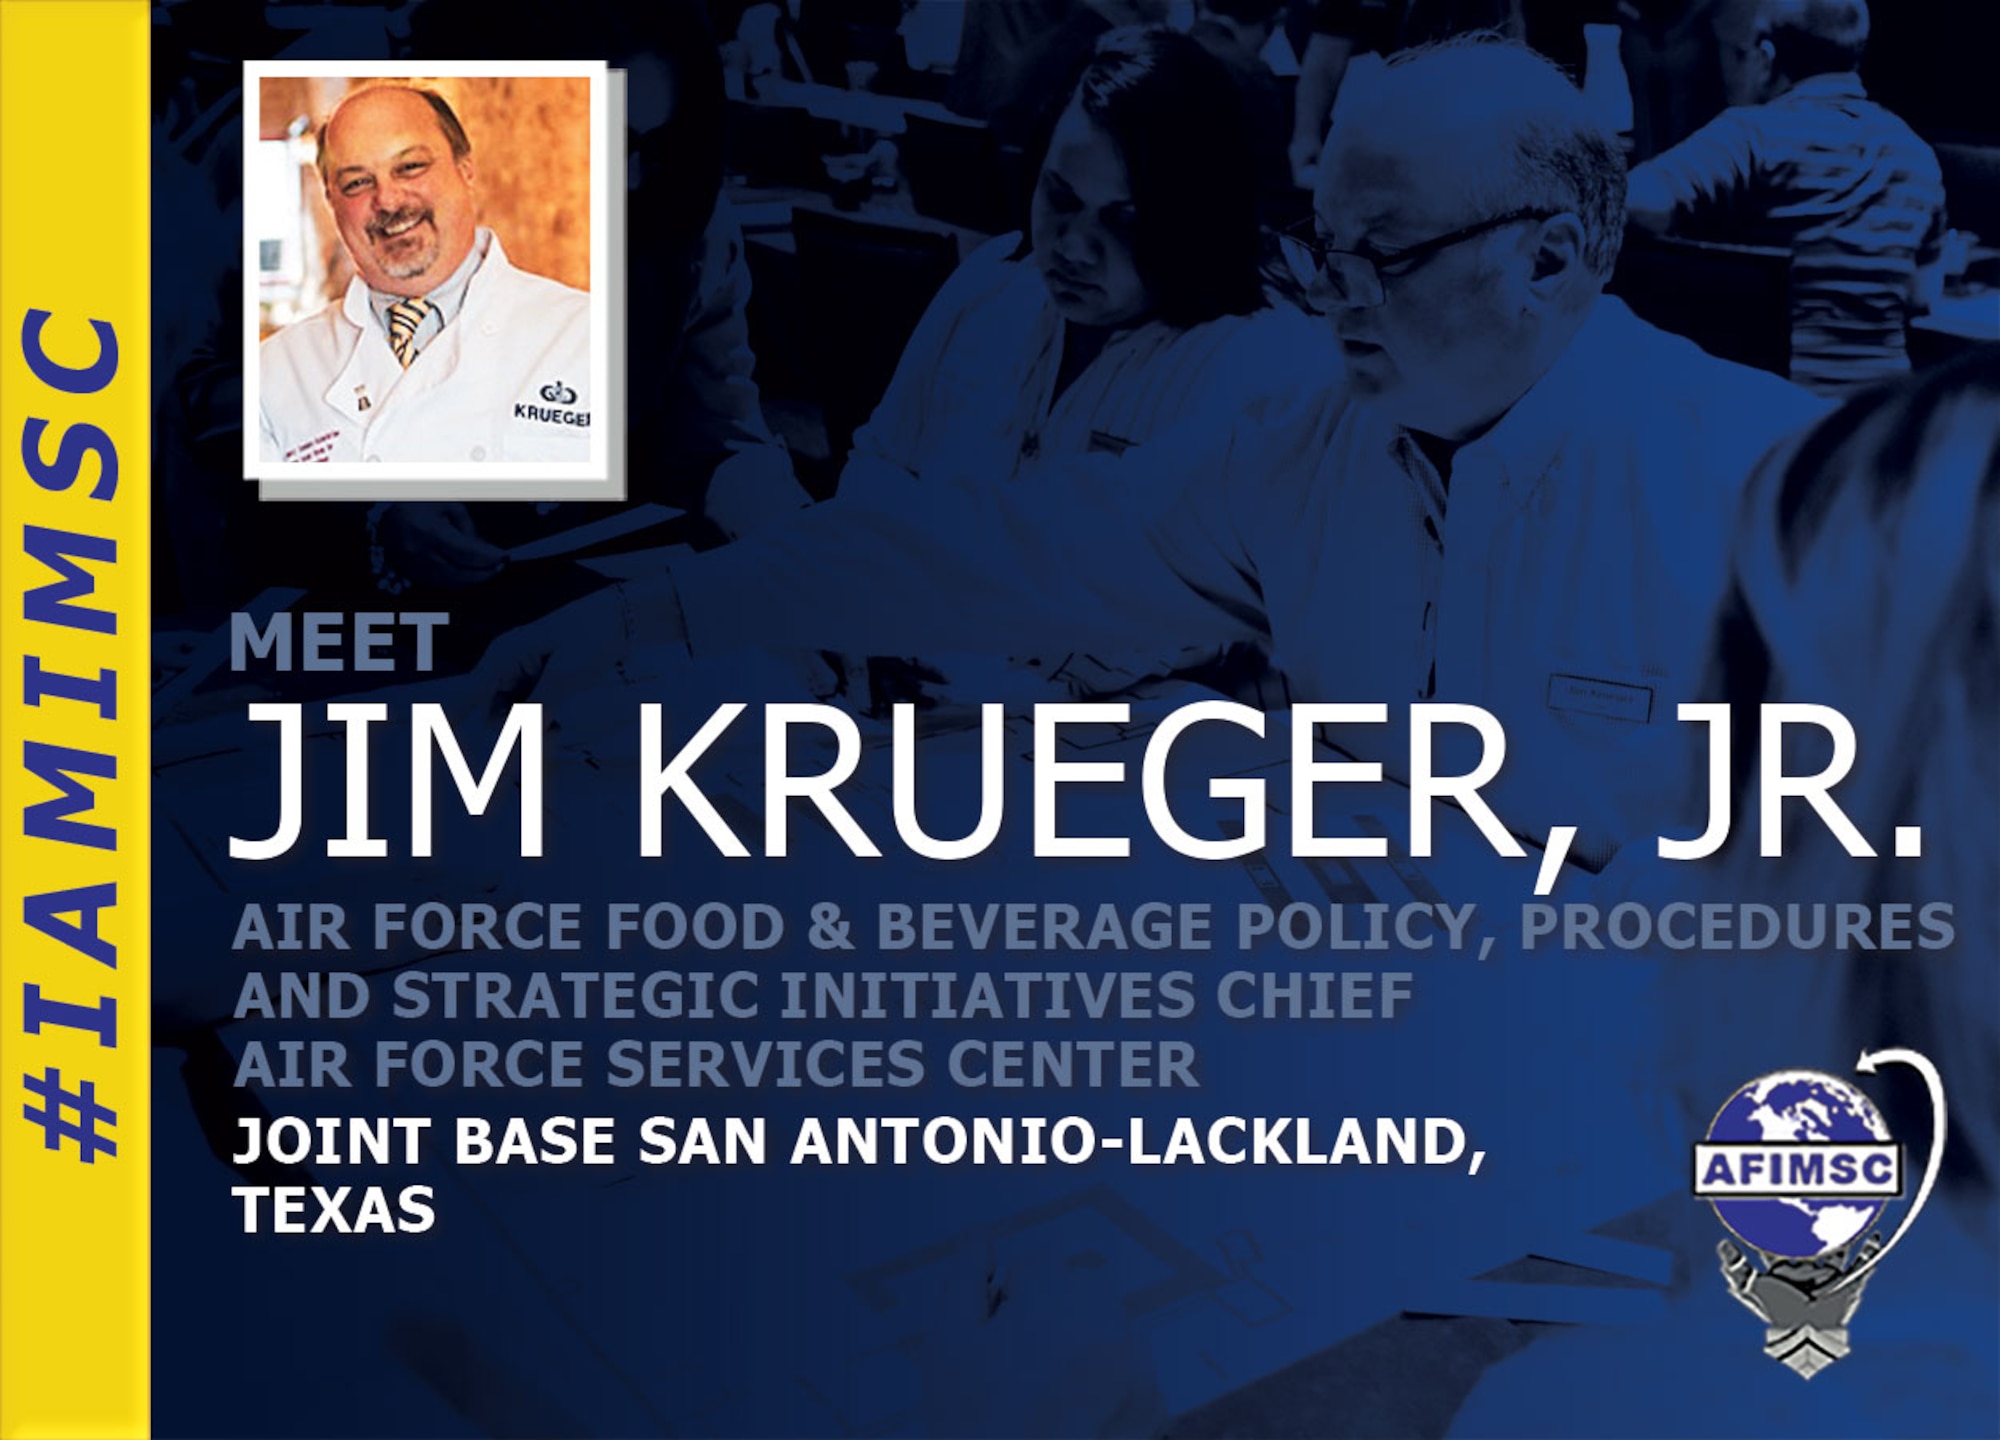 IAMIMSC spotlight graphic highlighting Jim Krueger Jr.